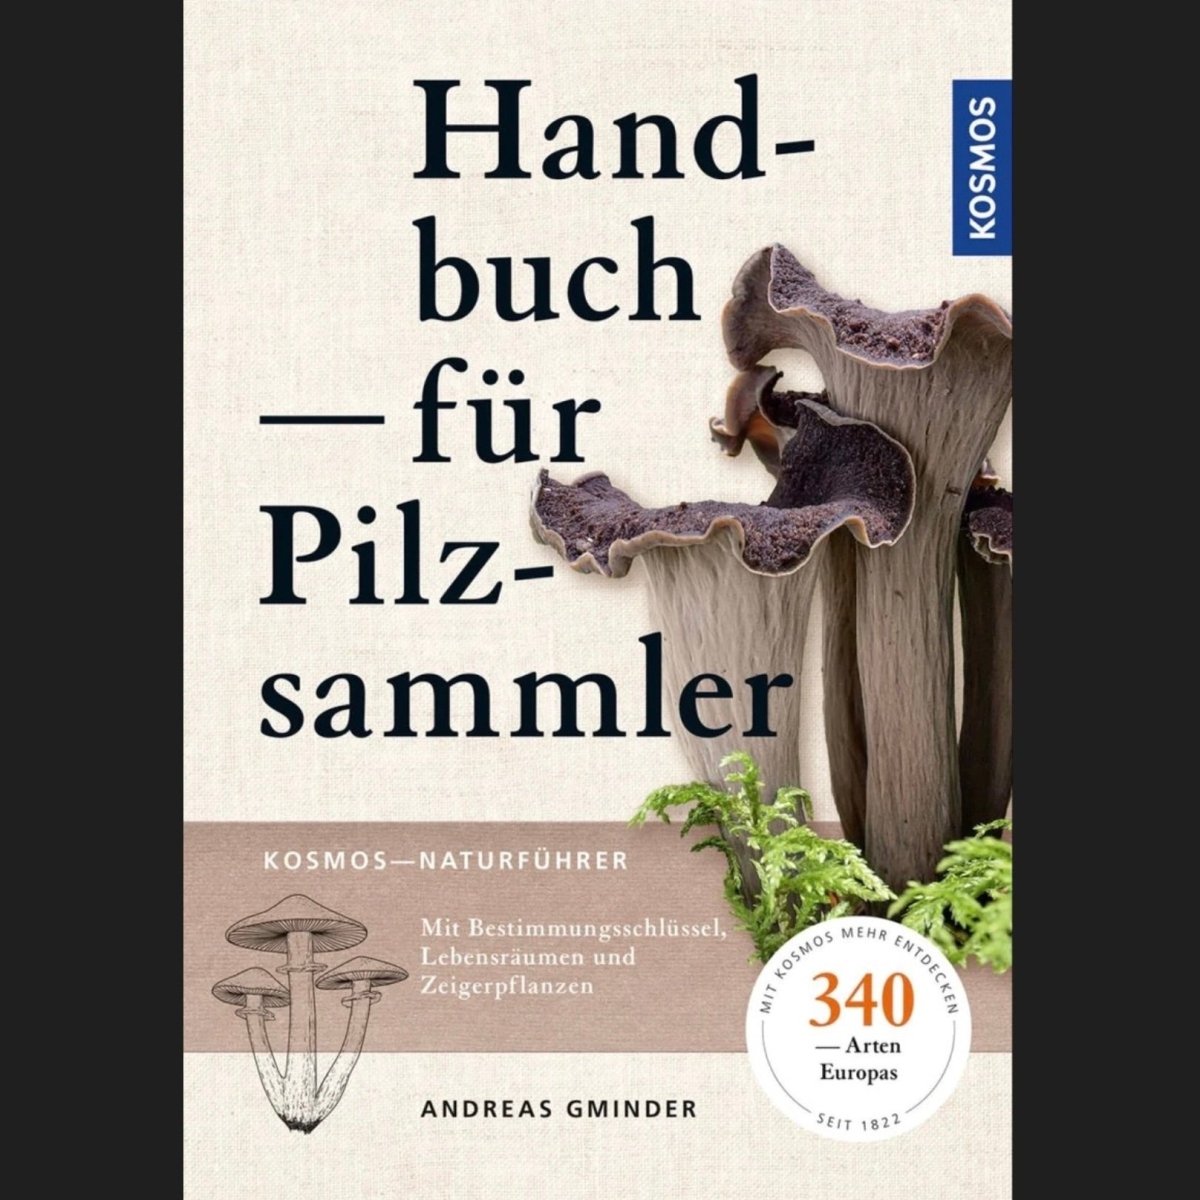 Pilzbuch: Handbuch für Pilzsammler